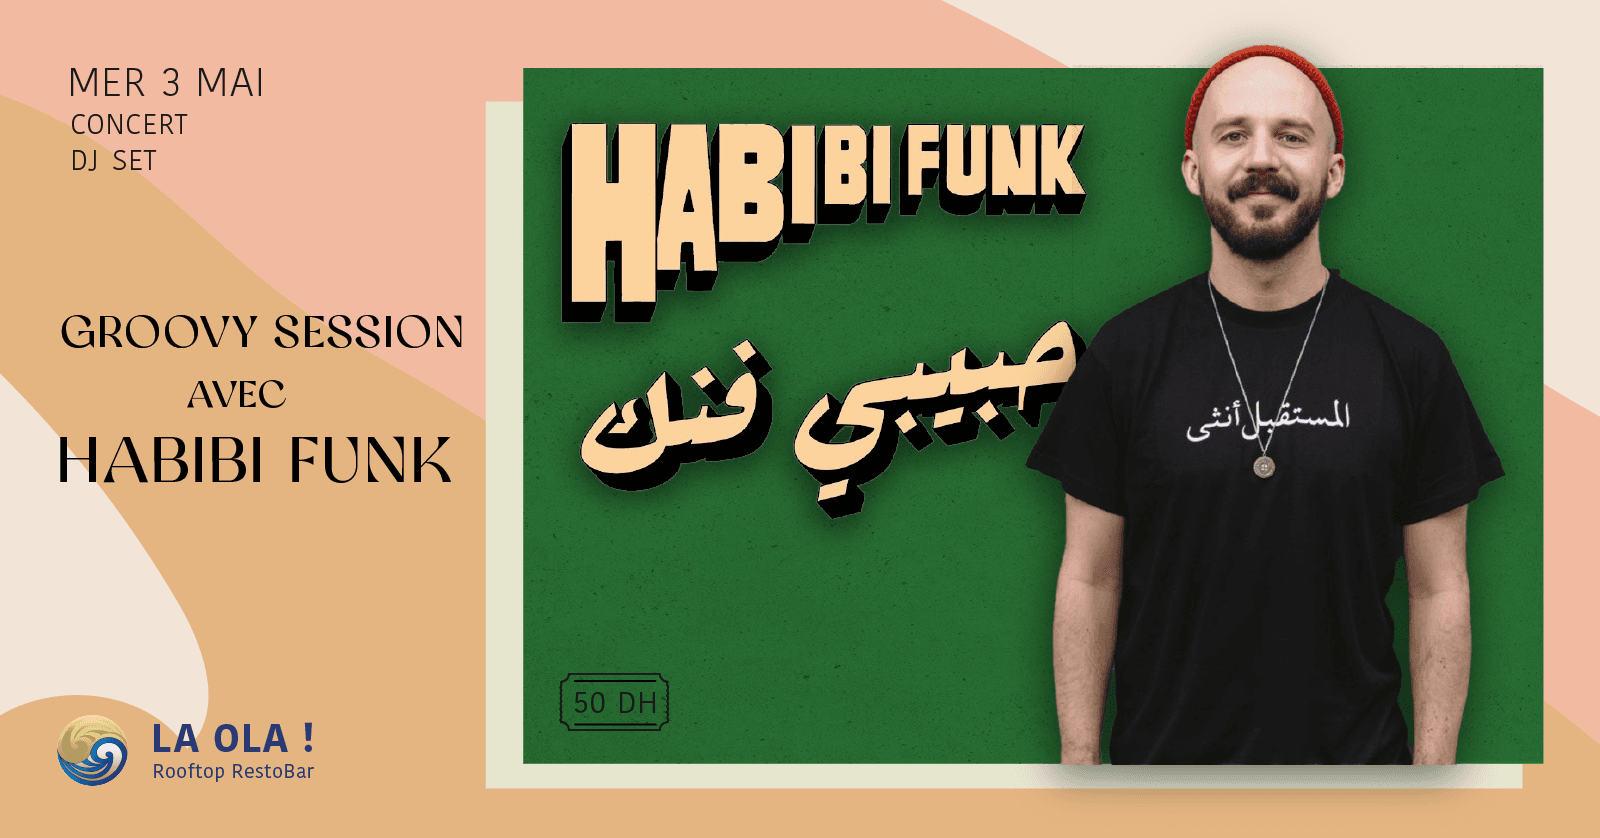 La Ola welcomes Habibi Funk